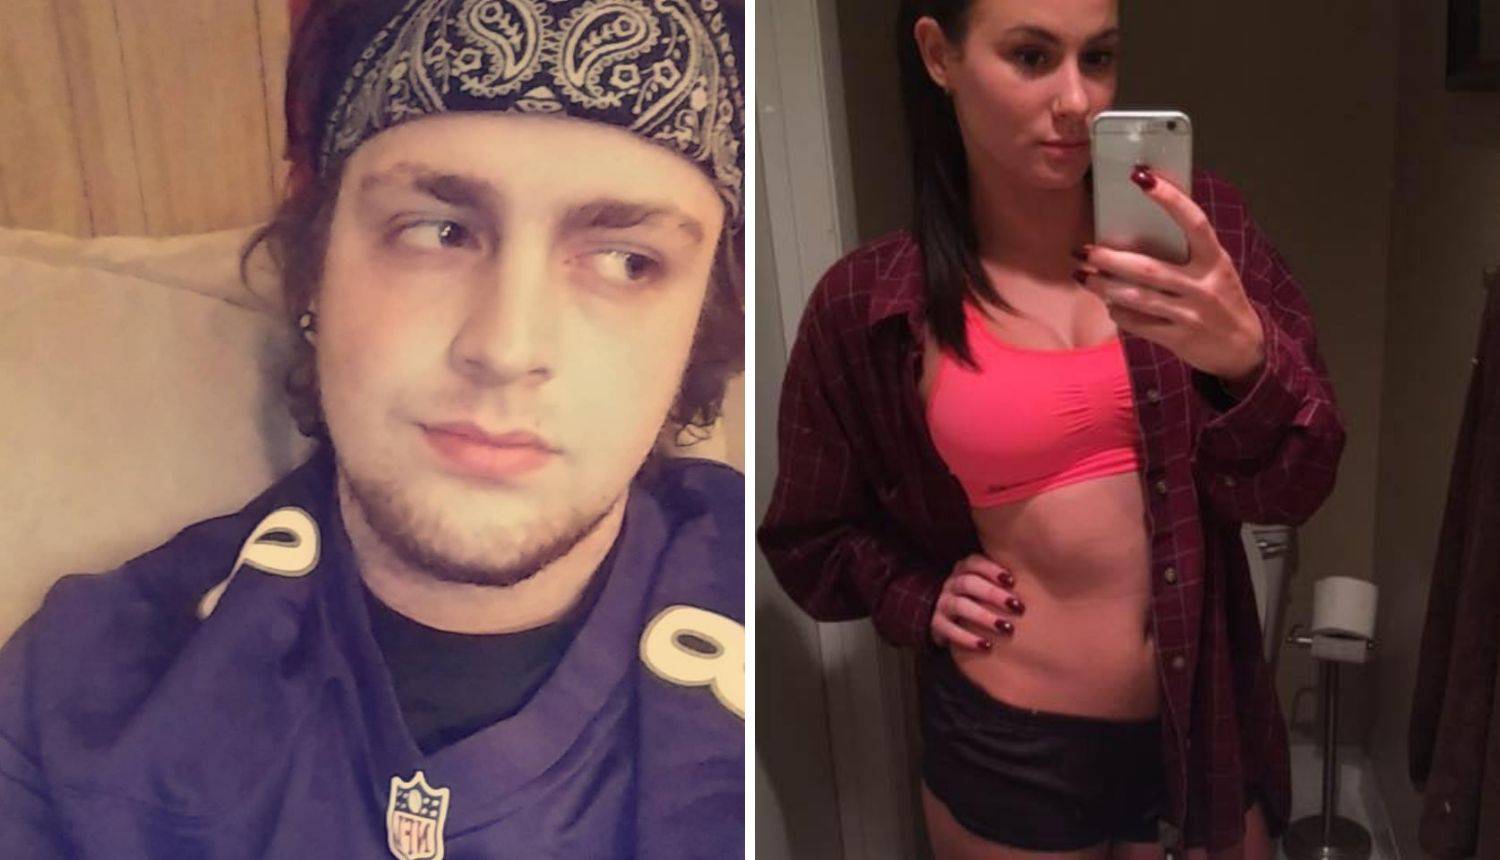 Ubio ju tijekom seksualne igre: 'Uzeli smo drogu,  slučajno je...'